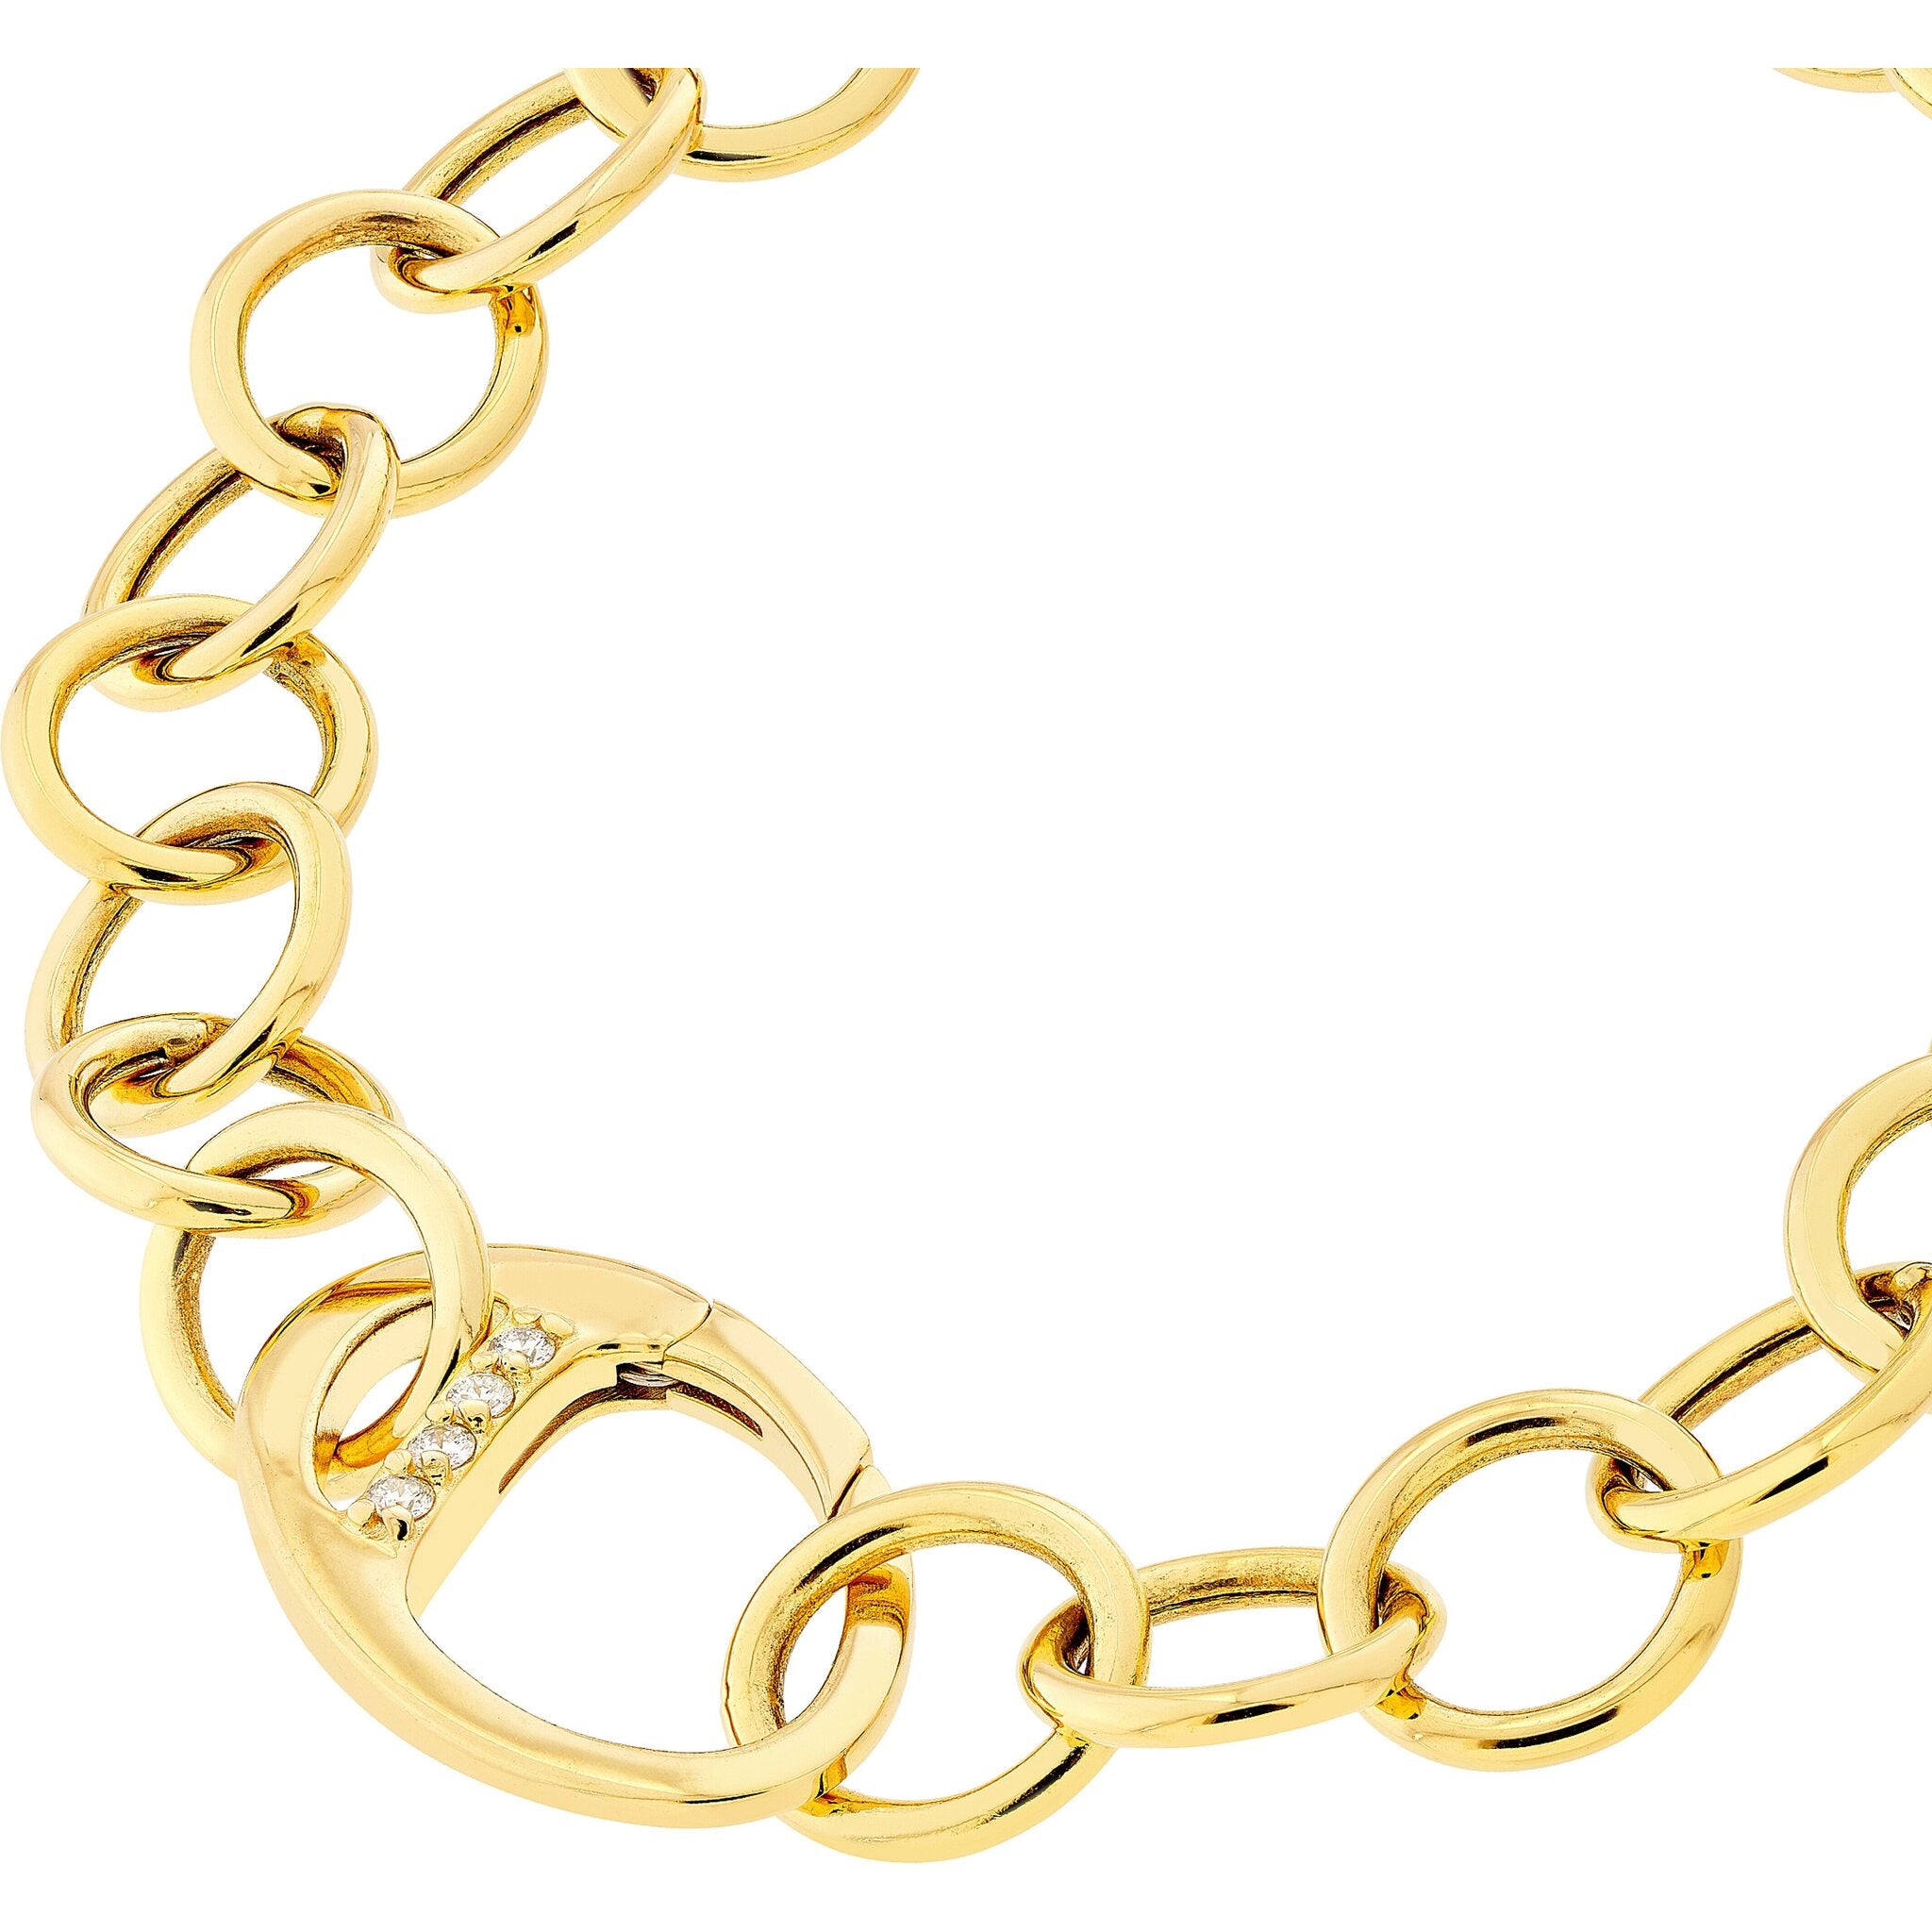 Olas D'oro 7.5 Bracelet - 14K Yellow Gold Heart Charm on Oval Rolo Chain Bracelet